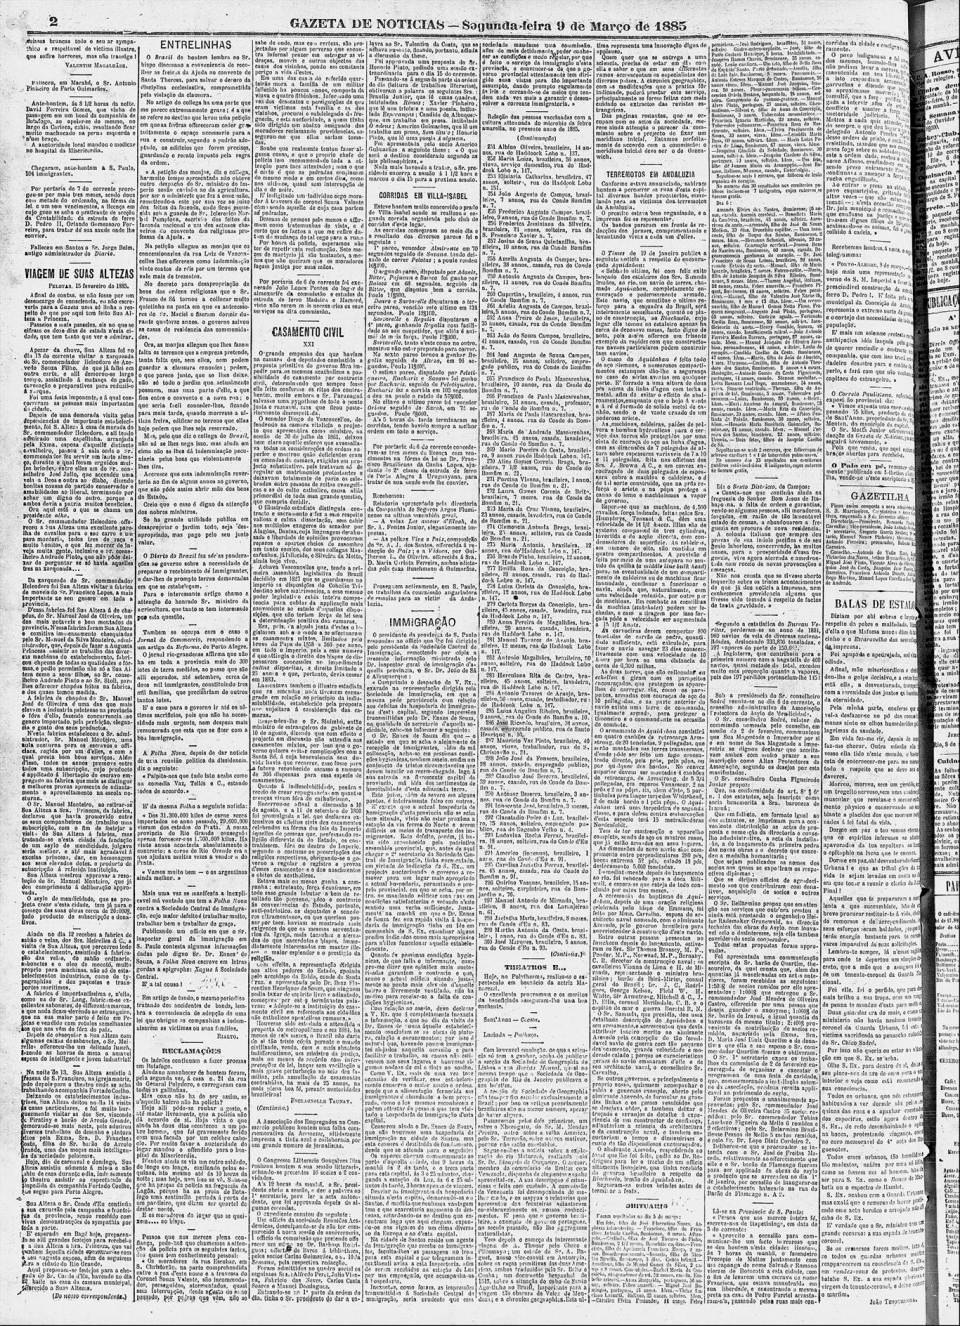 art-hospedaria-do-bom-retiro-replica-gazeta-de-noticias-9-march-1885-folha